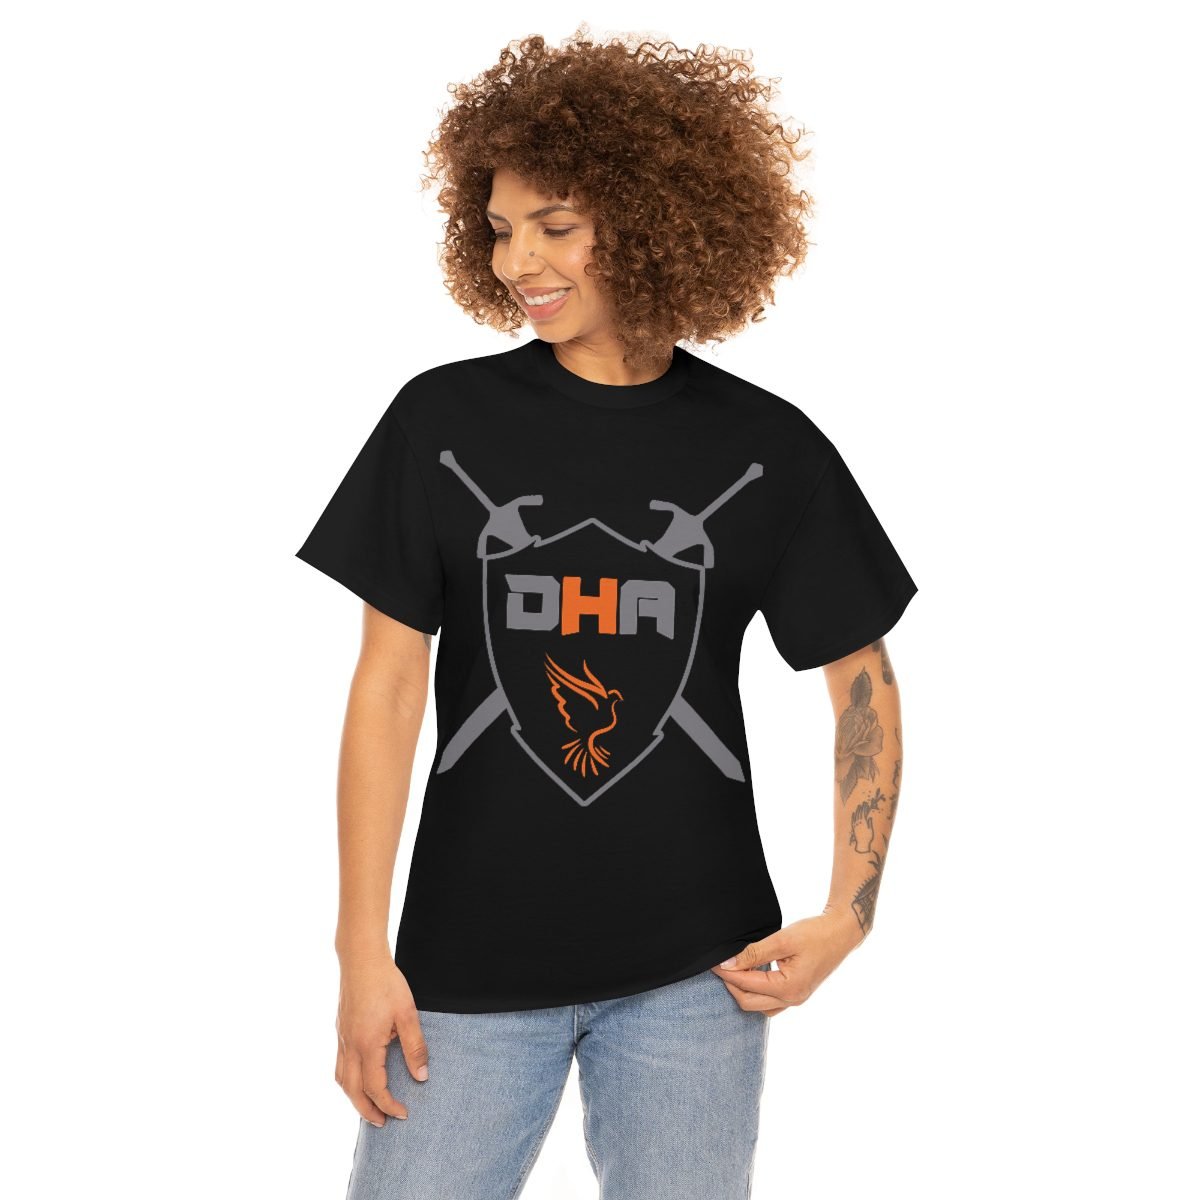 Metal House DHA Short Sleeve Tshirt (5000)